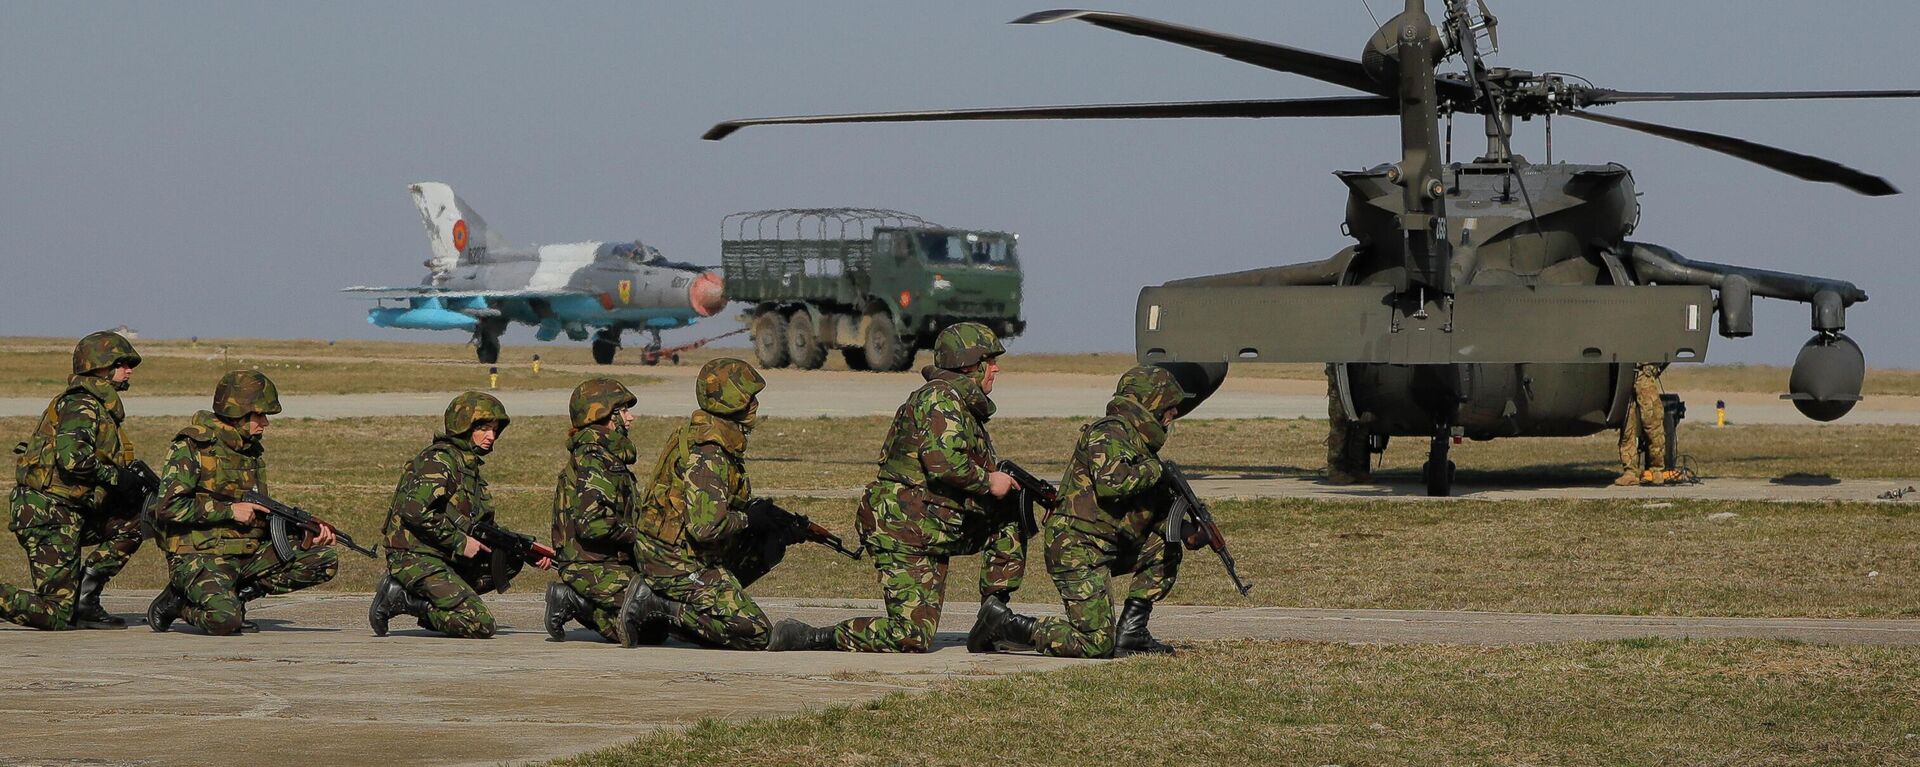 Com um jato de combate MIG 21 e um helicóptero Blackhawk ao fundo, soldados dos EUA participam de exercício militar conjunto com as Forças Armadas romenas na base aérea de Mihail Kogalniceanu, Romênia, 8 de março de 2017 - Sputnik Brasil, 1920, 14.12.2022